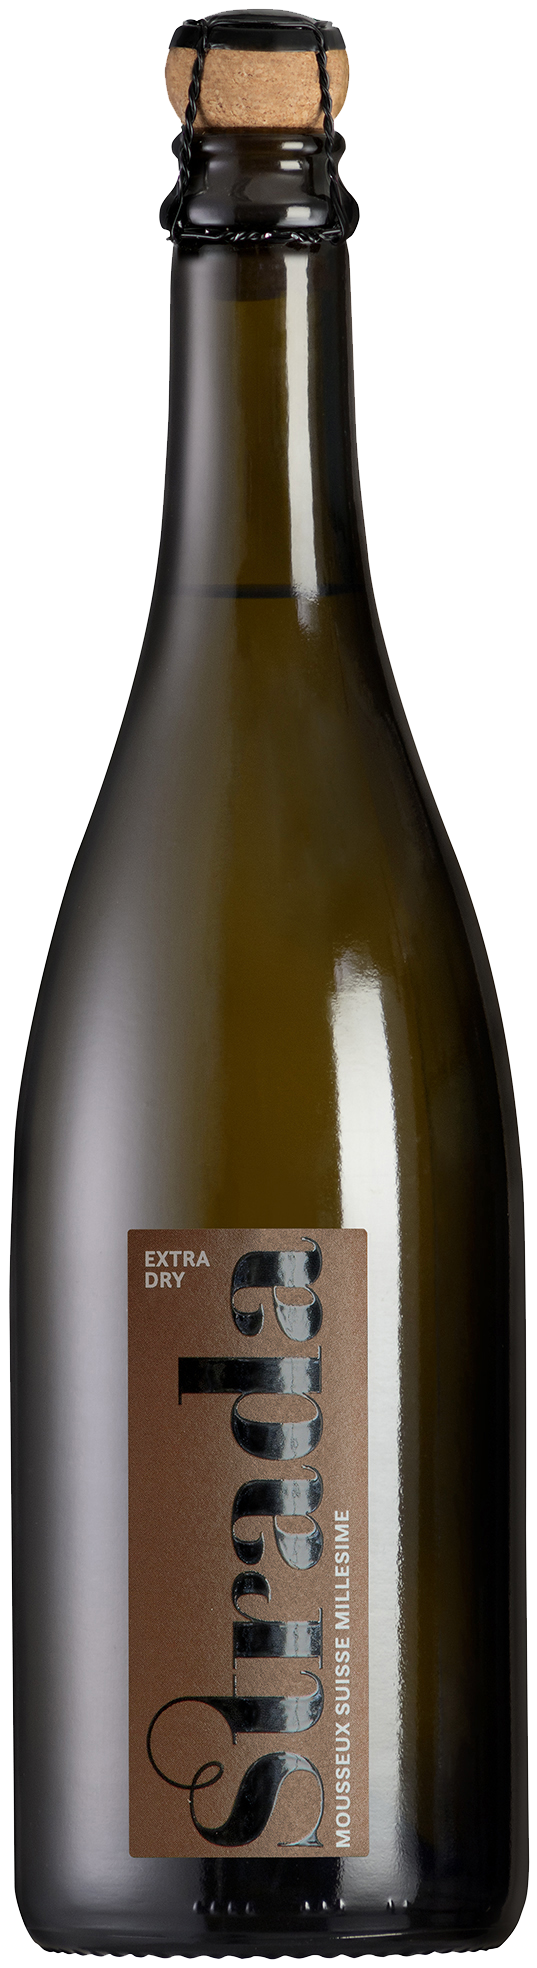 Der preisgekrönte, prickelnde schweizer Schaumwein aus Hallau der Rimuss & Strada Wein AG ist der Strada Extra Dry. Passend für jeden Apéro.